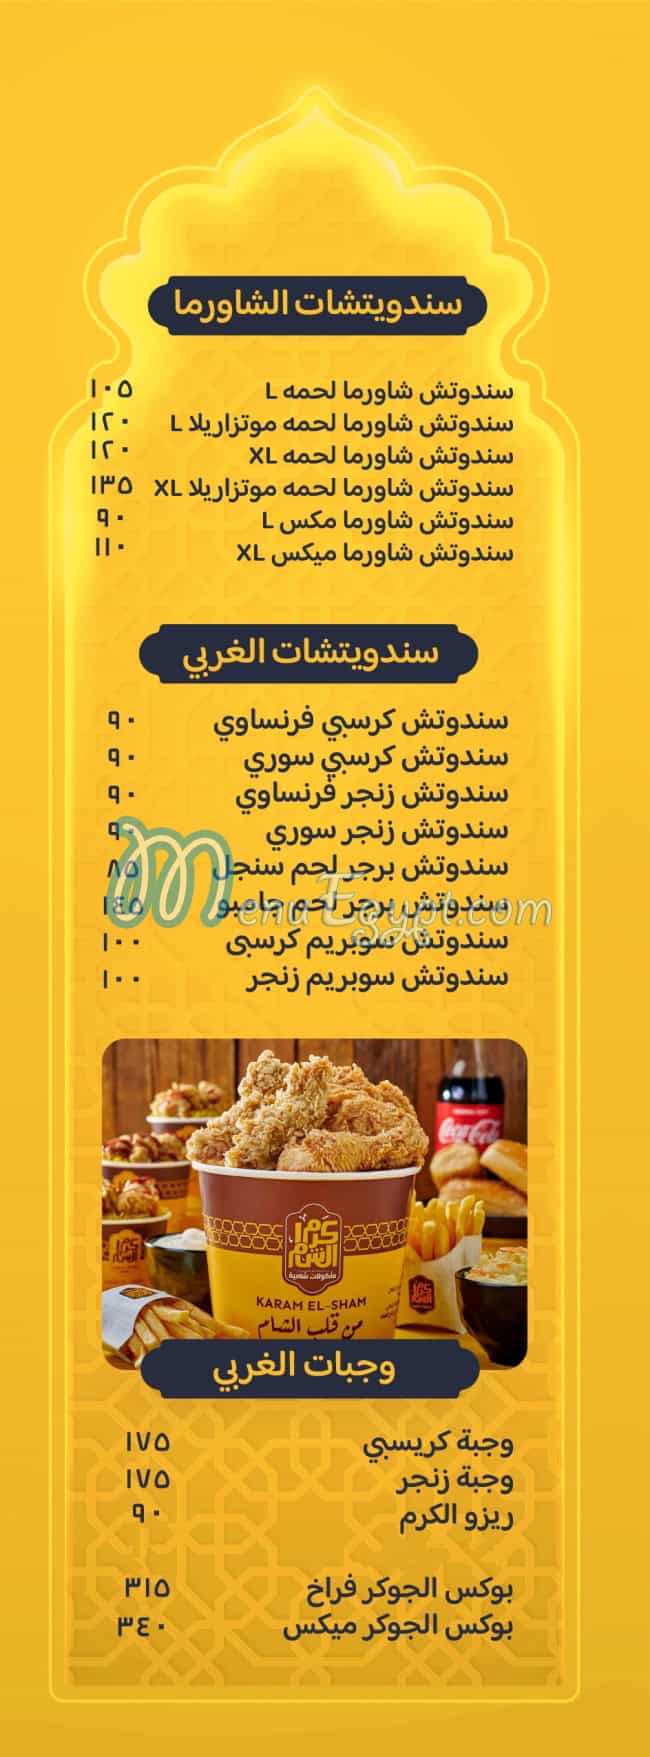 Karam El Sham online menu